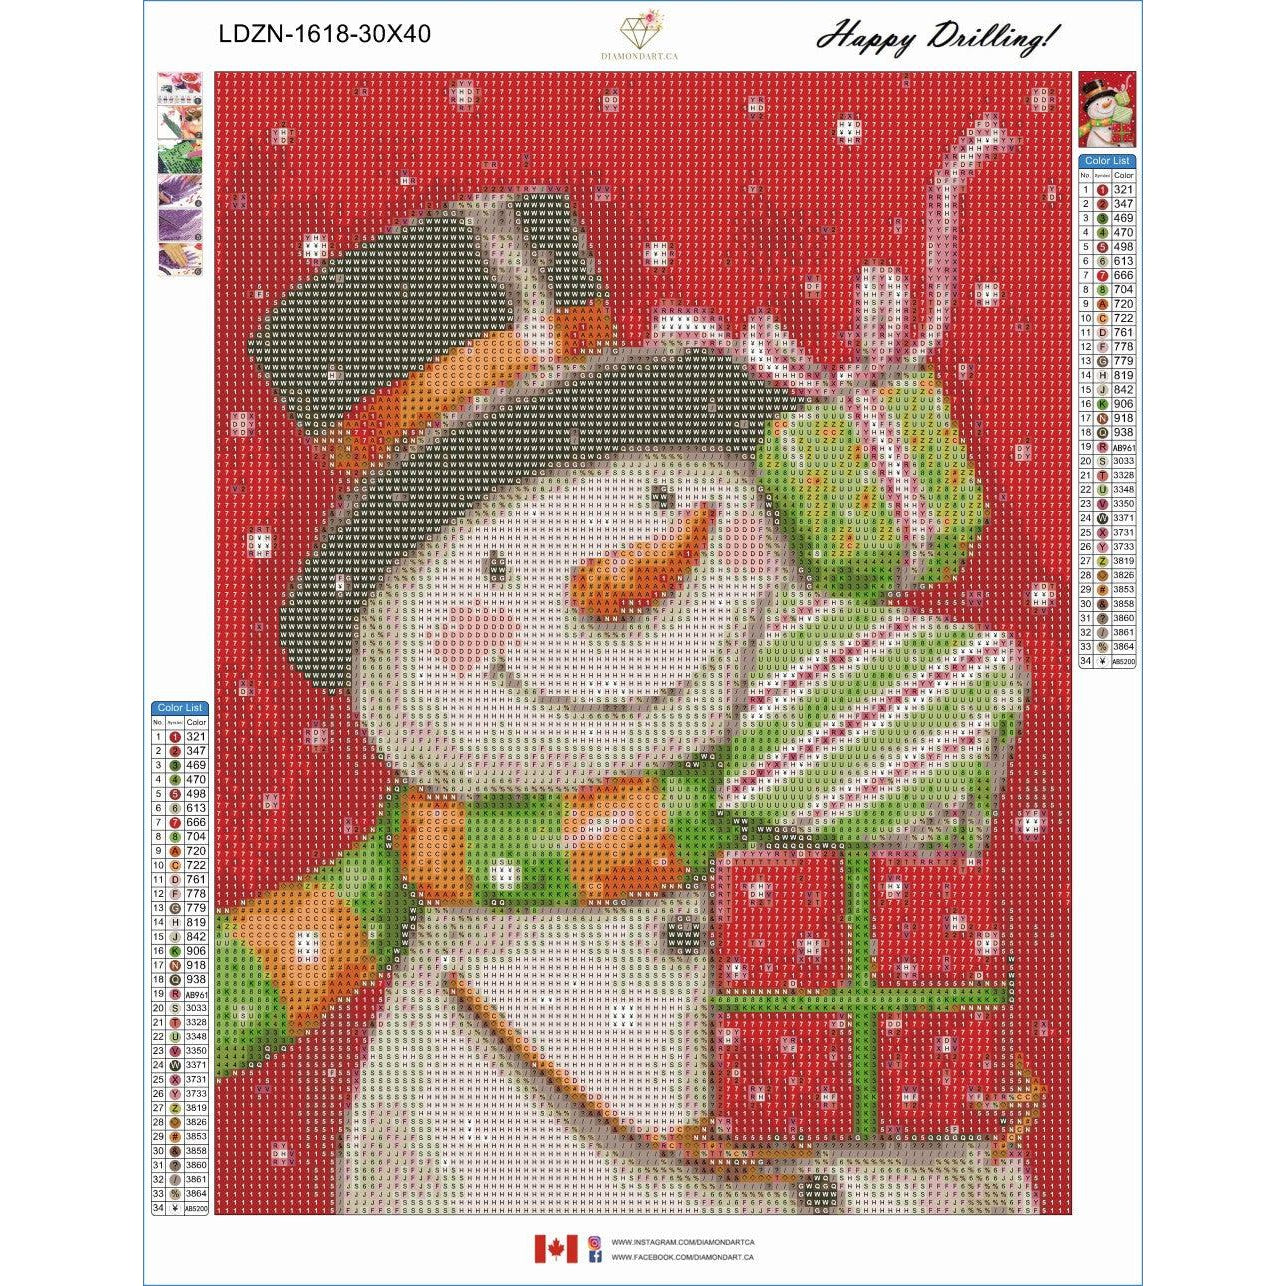 Snowman With Presents by MAKIKO-35x45cm-Round-DiamondArt.ca